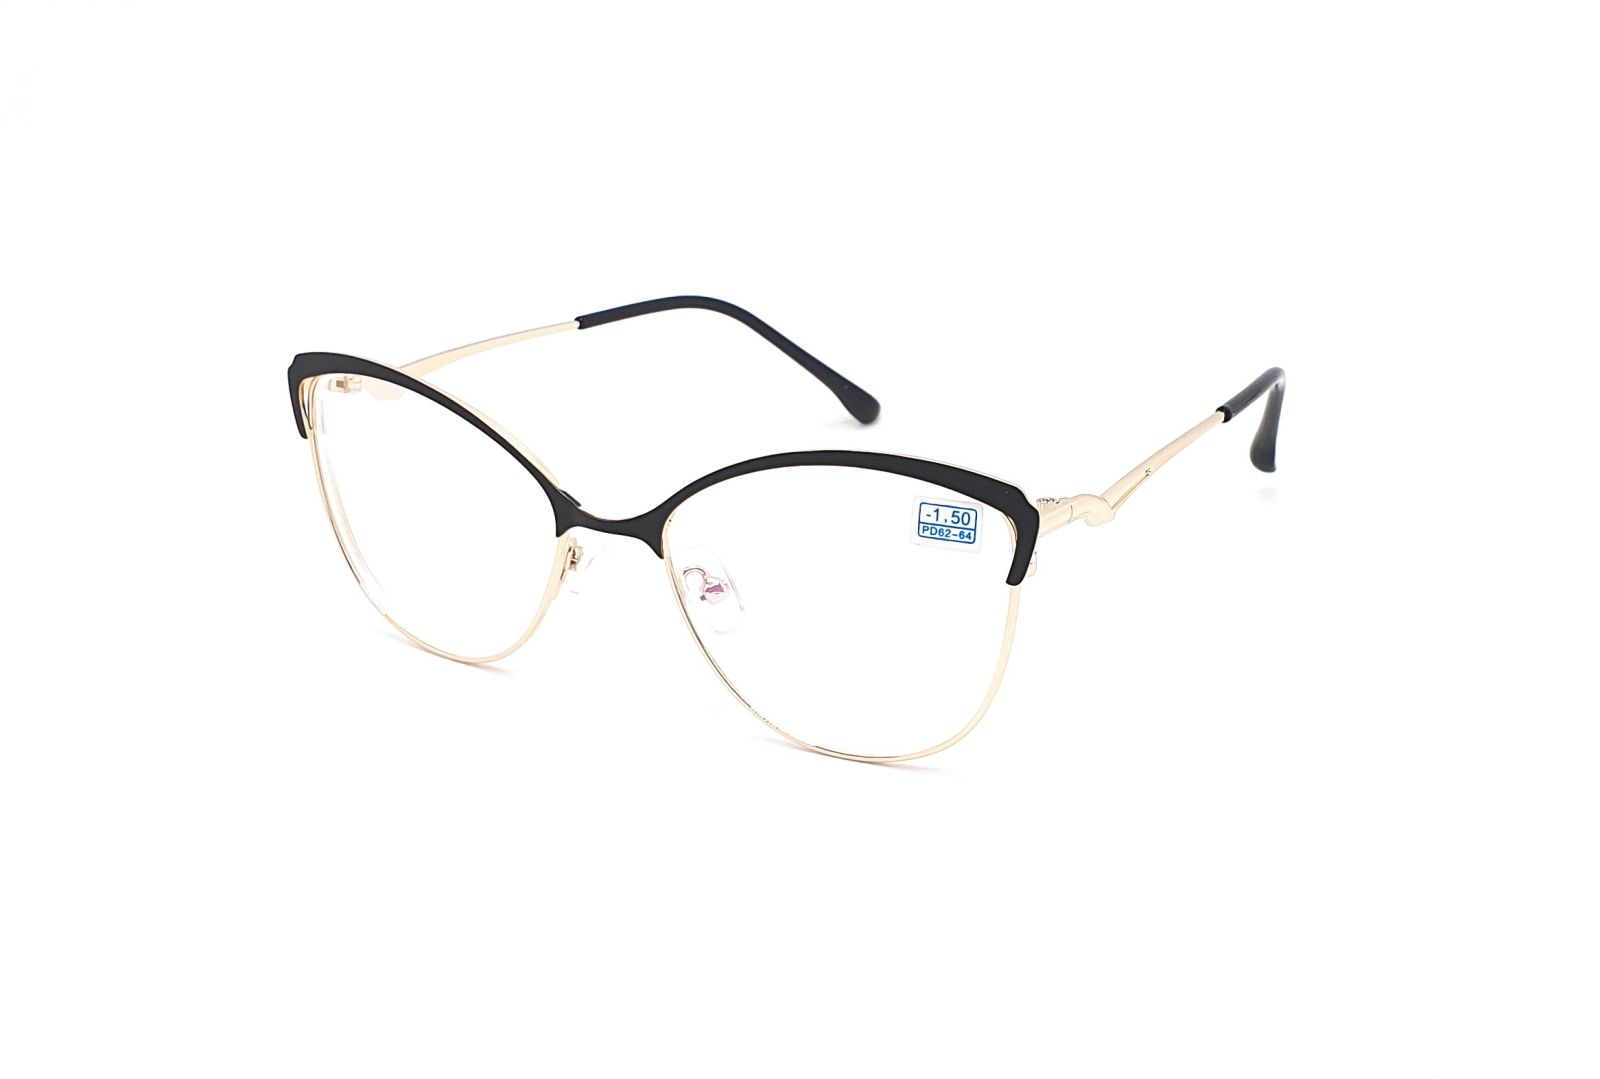 Dioptrické brýle 850 / -1,50 black/gold s antireflexní vrstvou